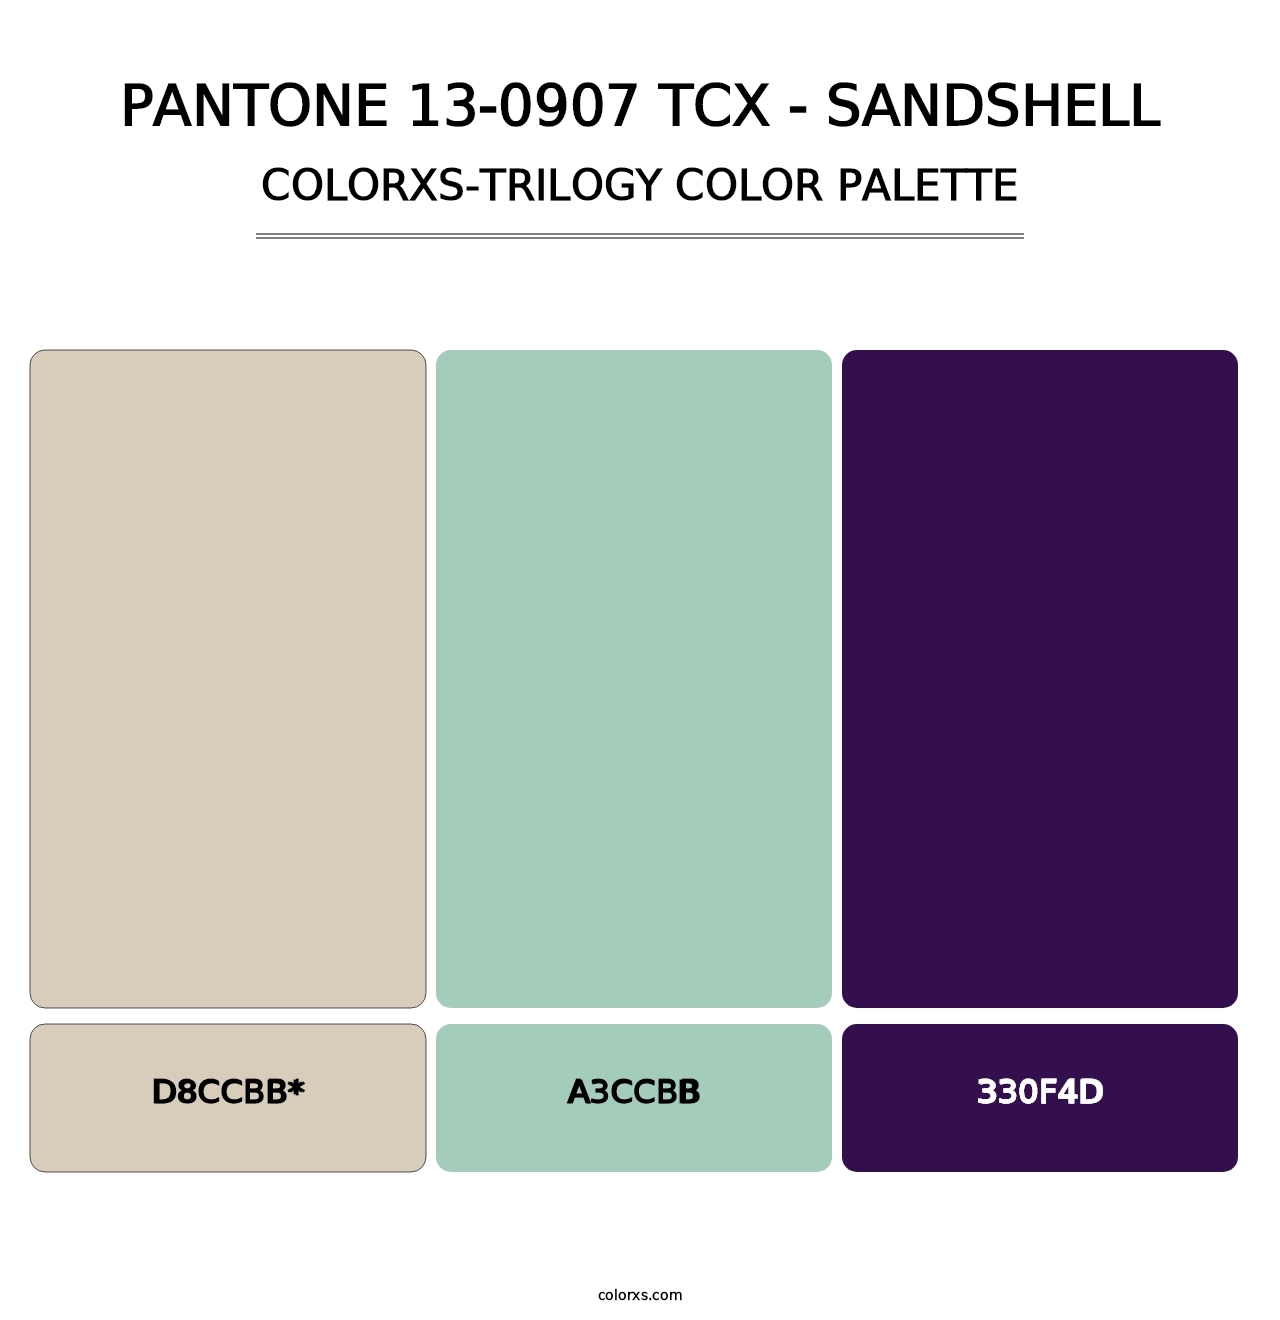 PANTONE 13-0907 TCX - Sandshell - Colorxs Trilogy Palette